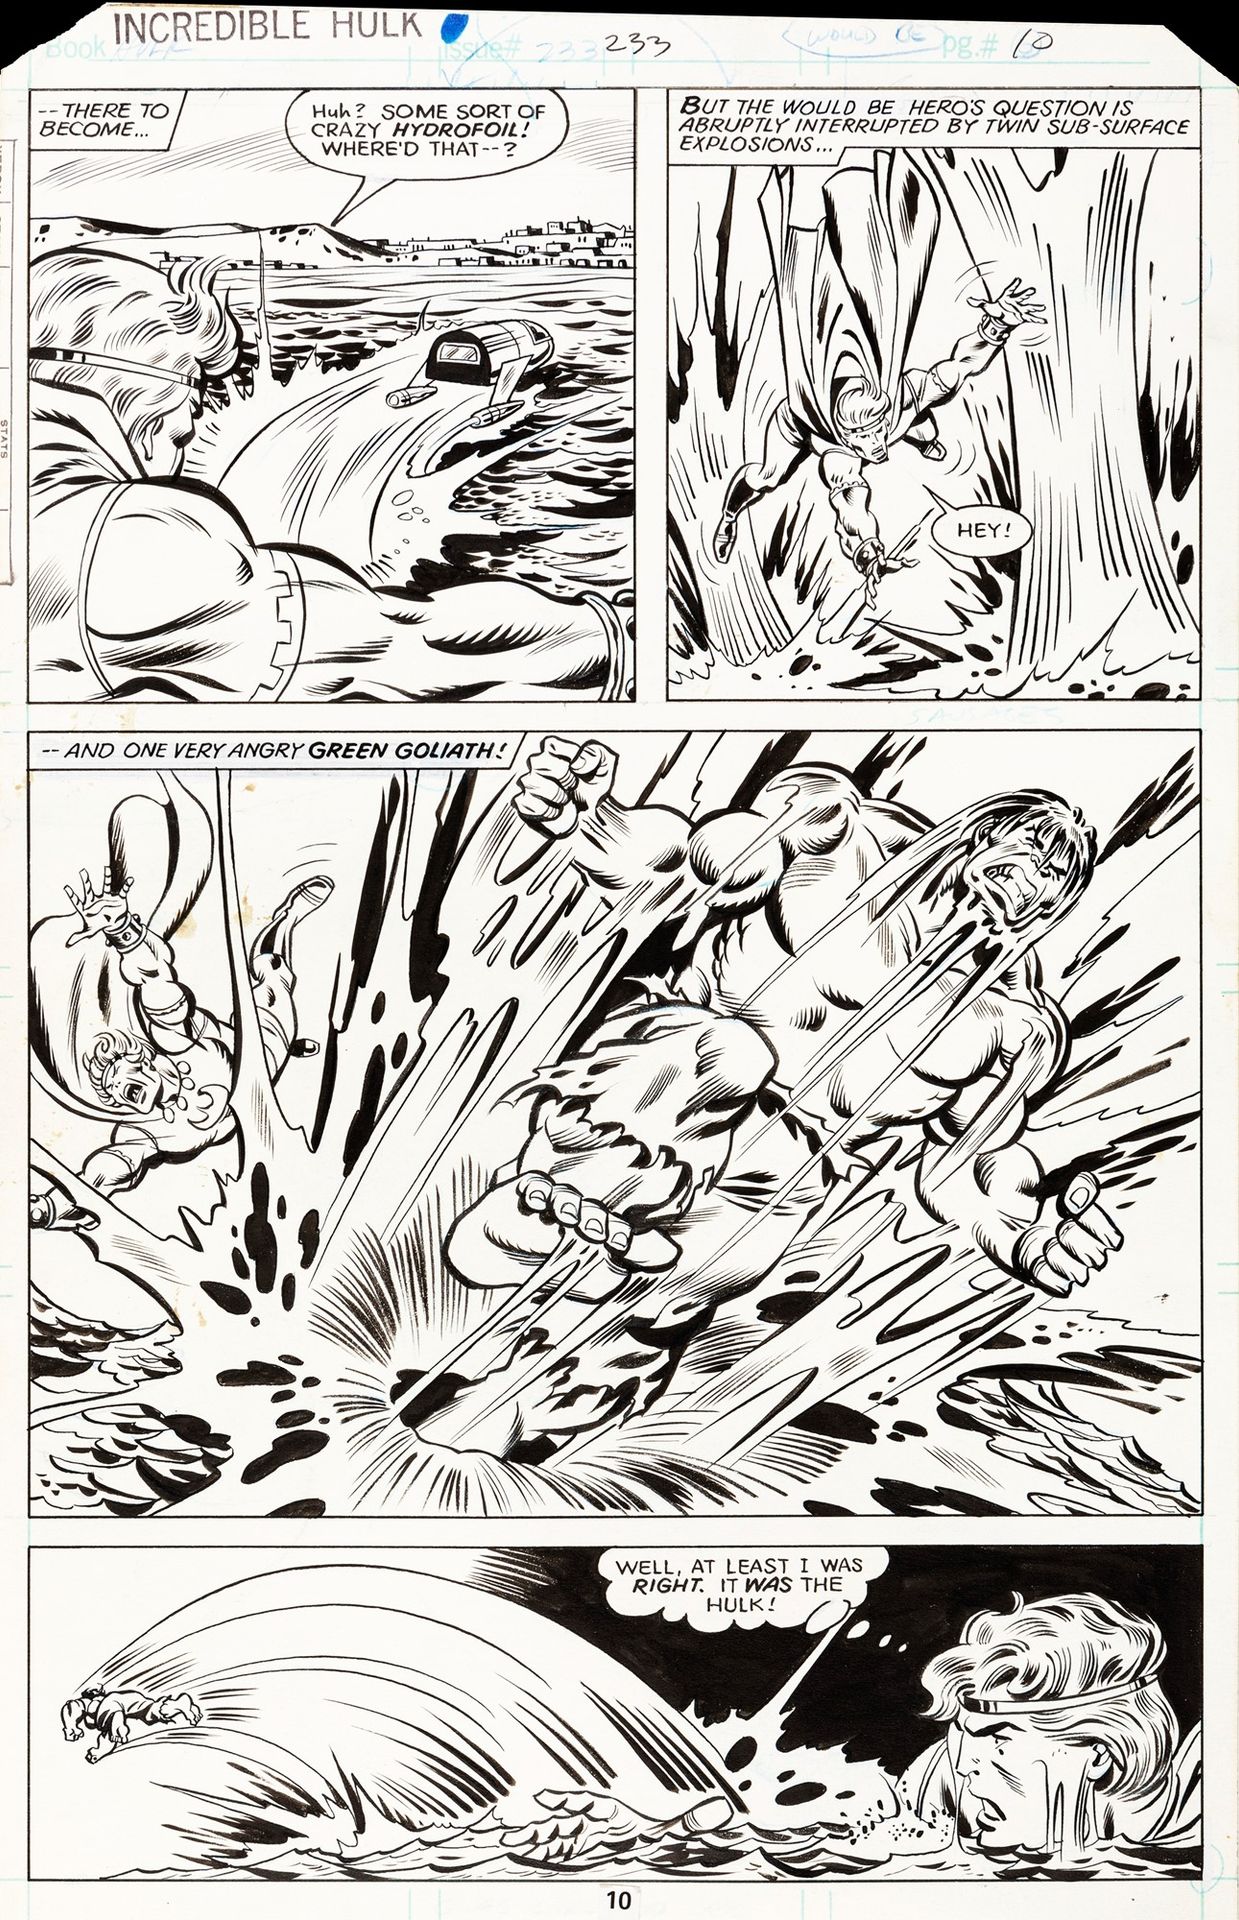 Sal BUSCEMA Incredible Hulk - ...¡En el fondo de la bahía!, 1979

lápiz y tinta &hellip;